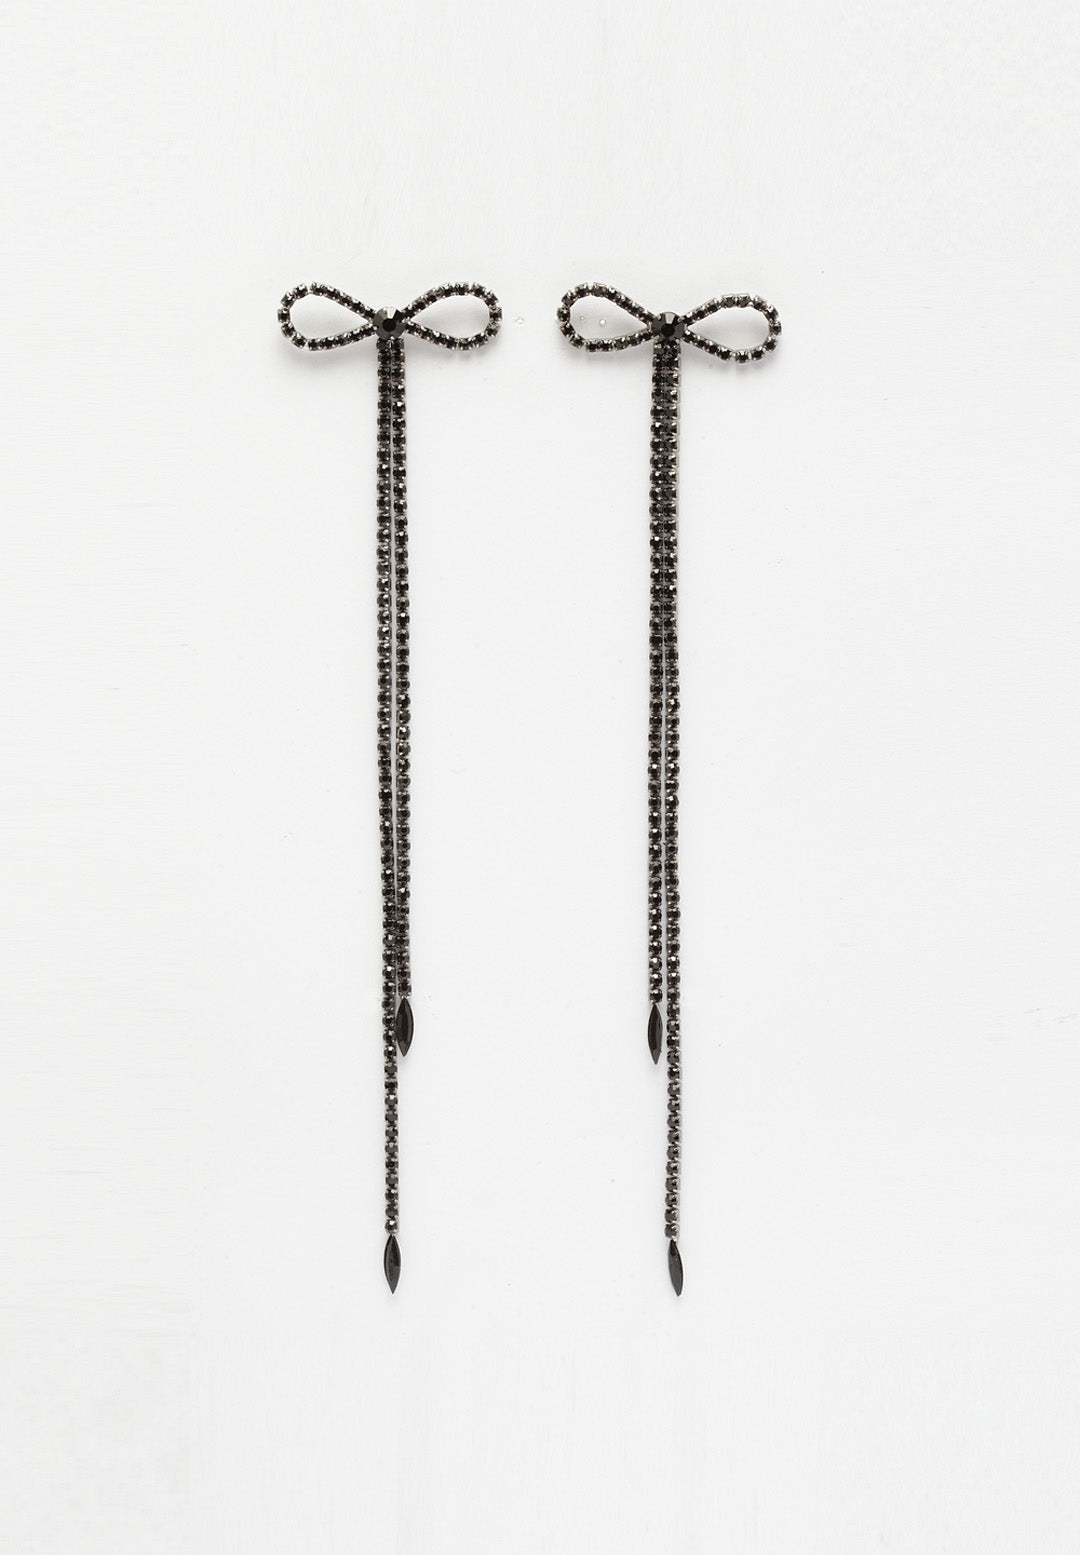 Avant-Garde Paris Contemporary Crystal Dangling Earrings